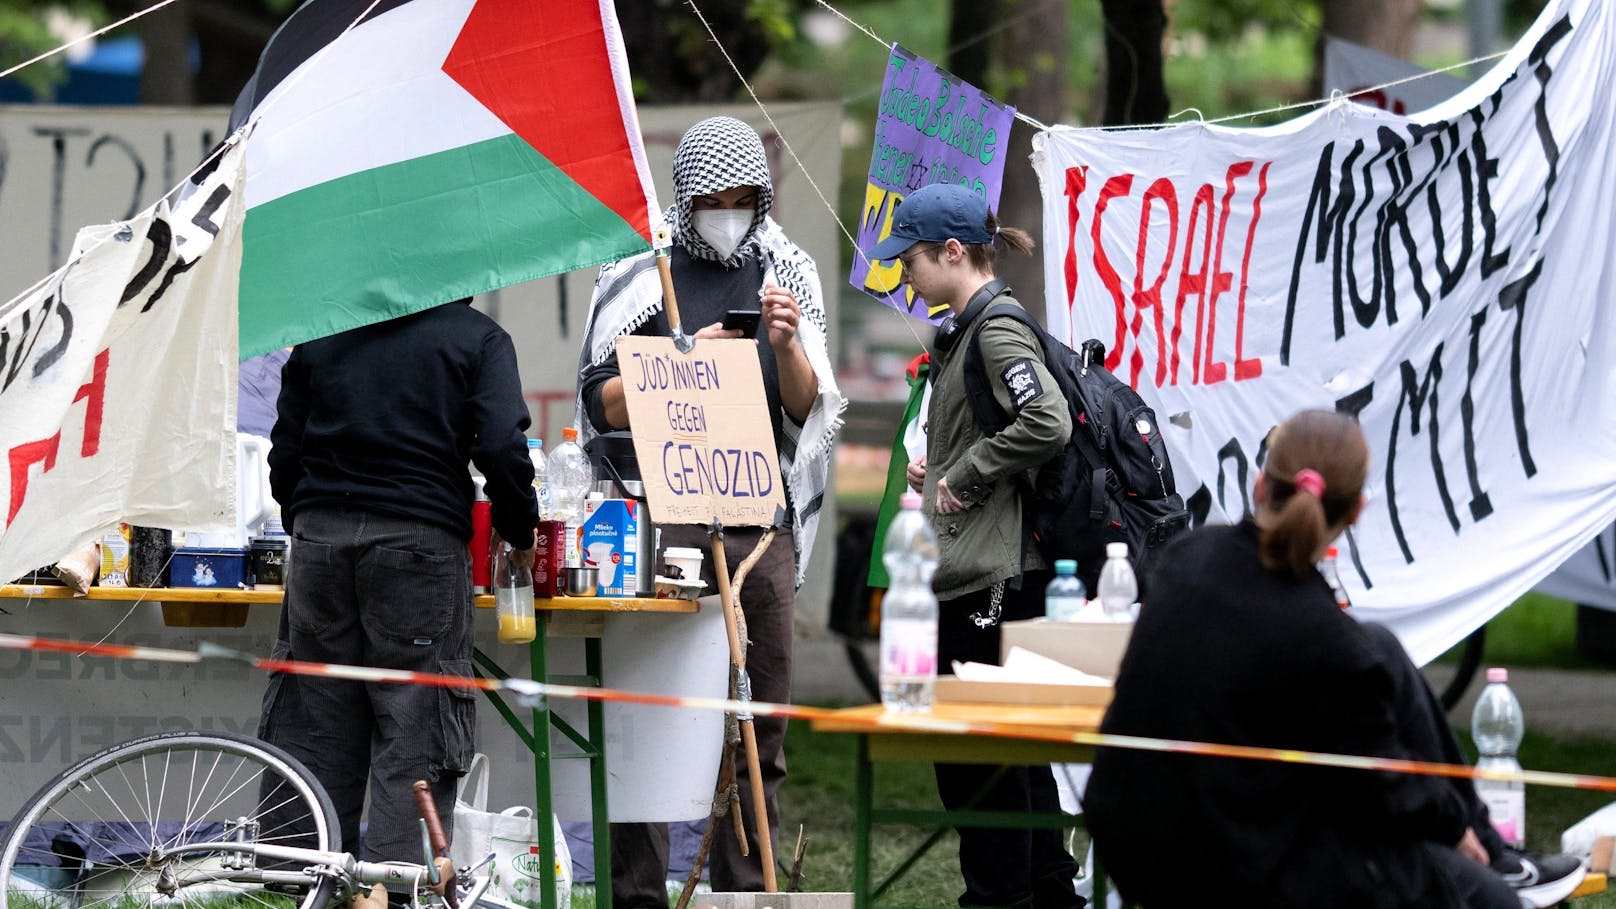 Festnahmen! Polizei räumt Pro-Palästina-Camp in Wien